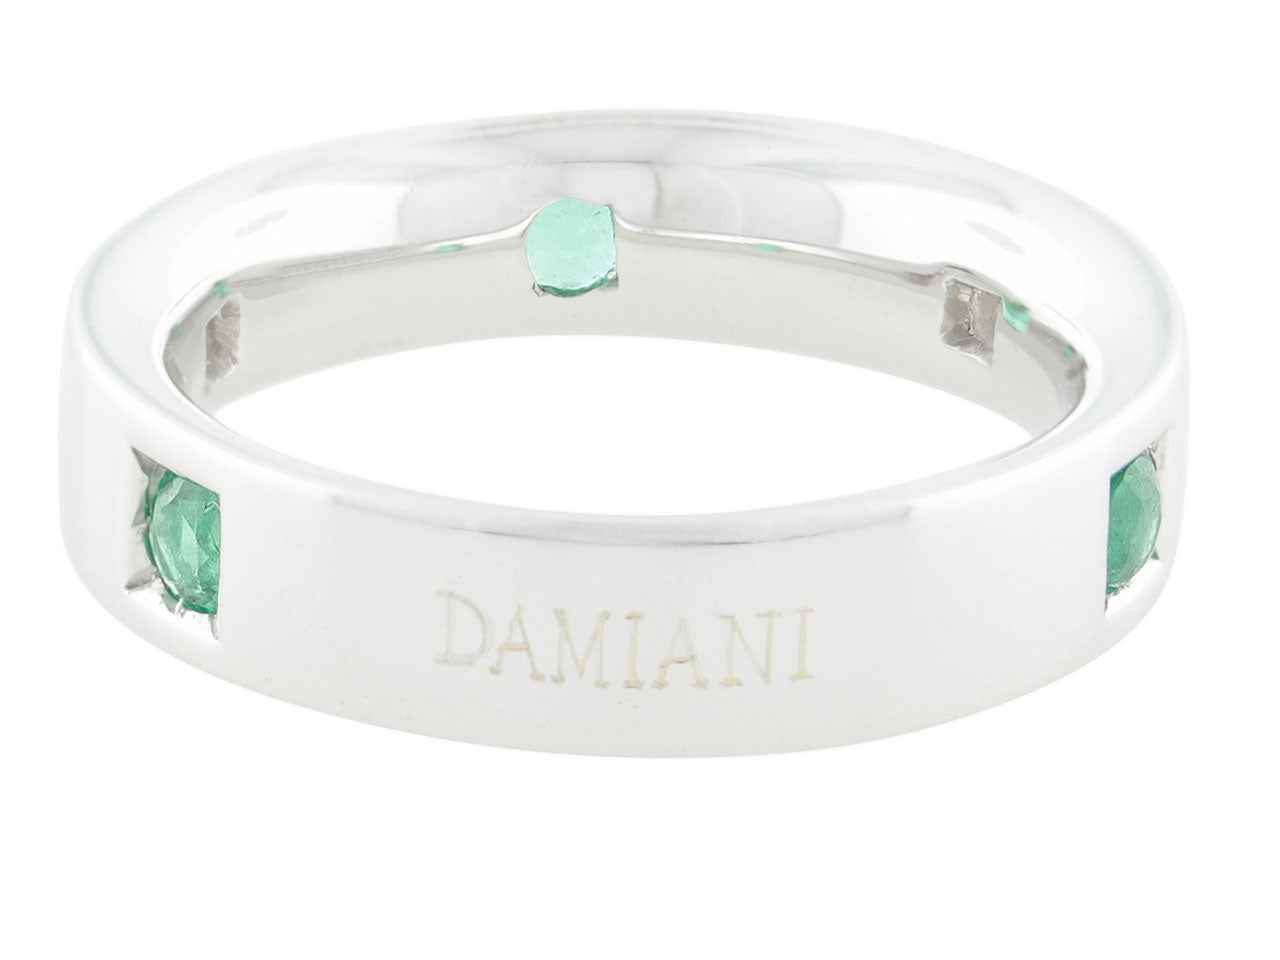 Damiani Emerald and Diamond Ring in 18K